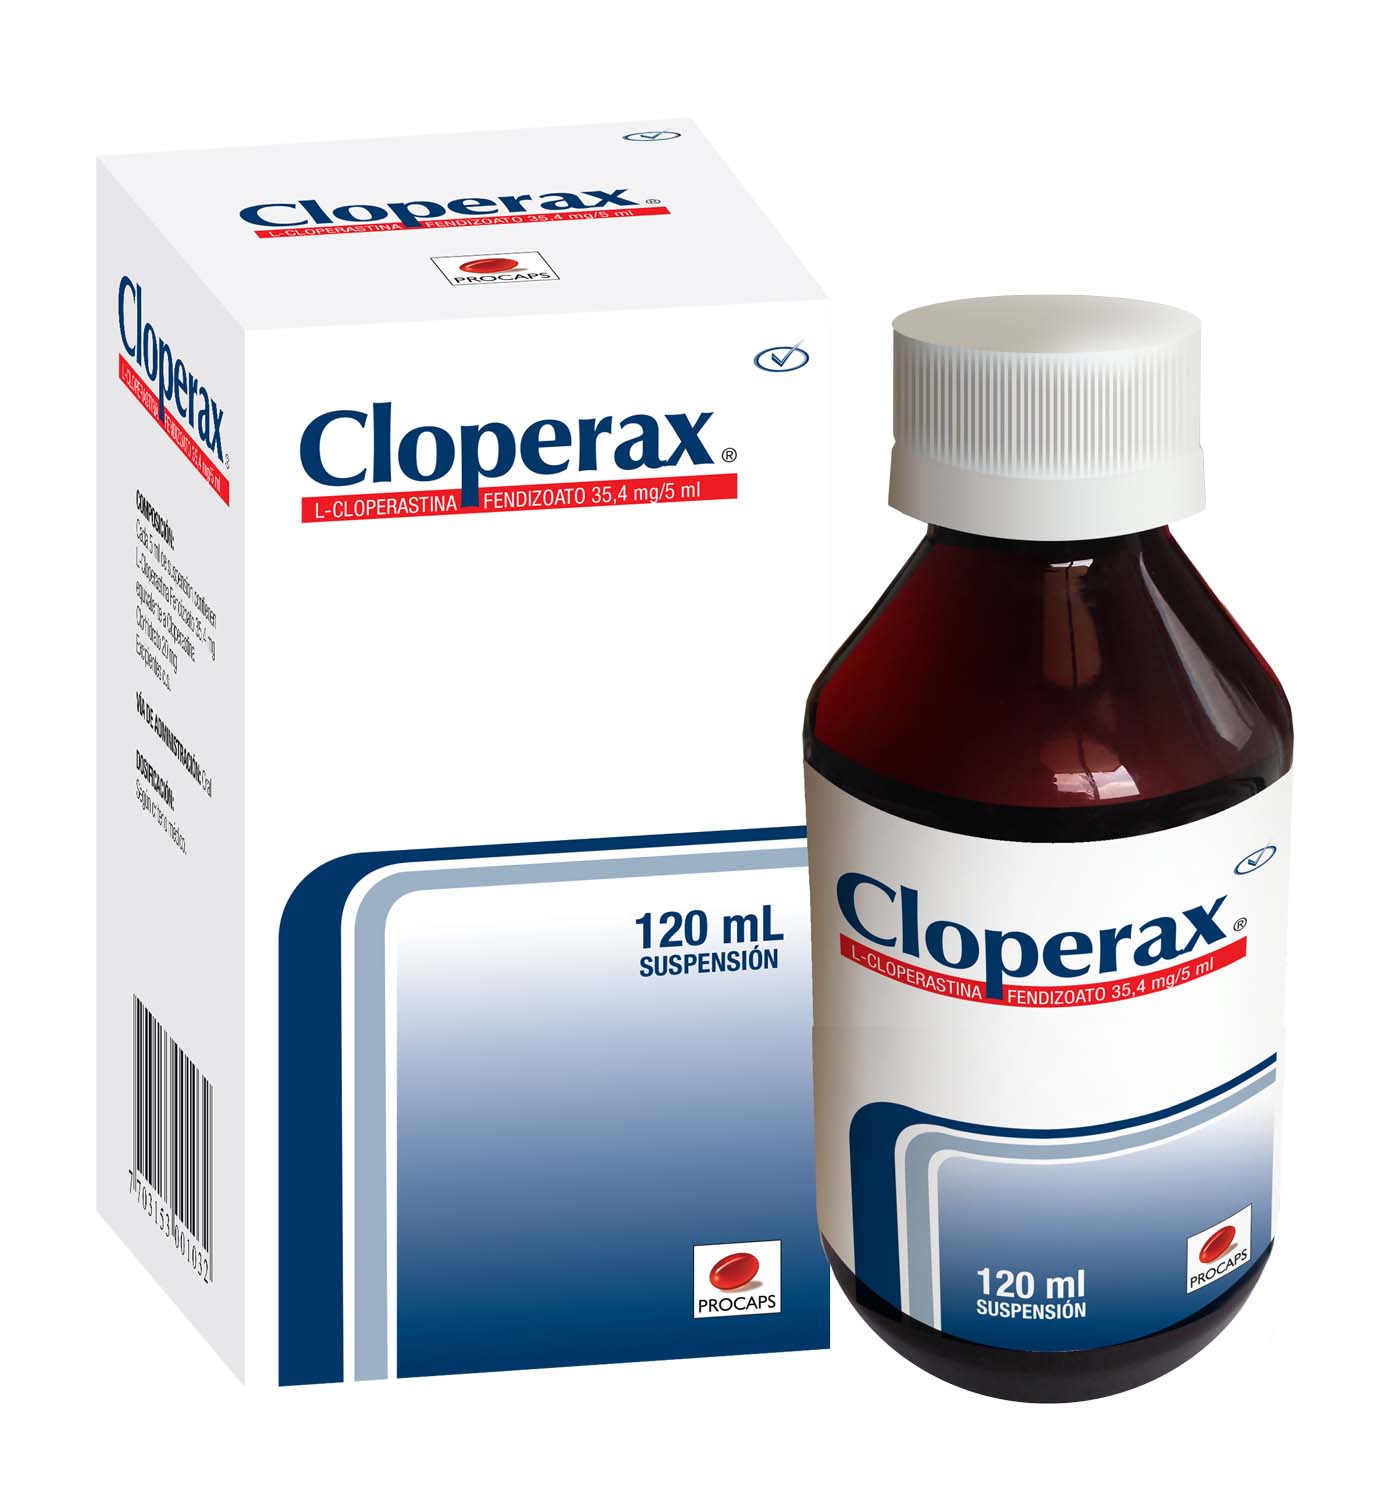 Cloperax